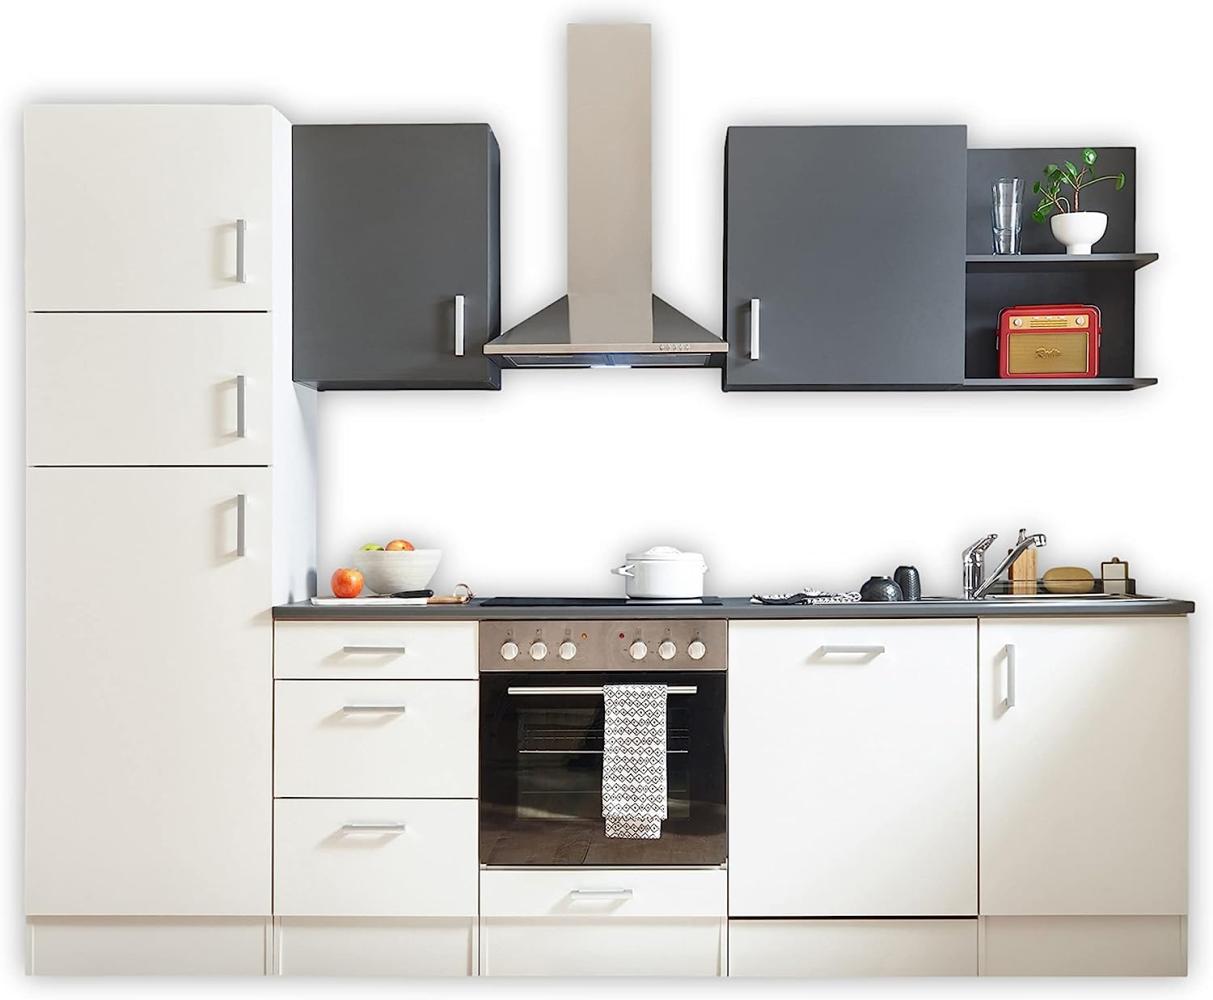 CORNER 280 Moderne Küchenzeile ohne Elektrogeräte in Weiß, Anthrazit - Geräumige Einbauküche mit viel Platz und Stauraum - 280 x 211 x 60 cm (B/H/T) Bild 1